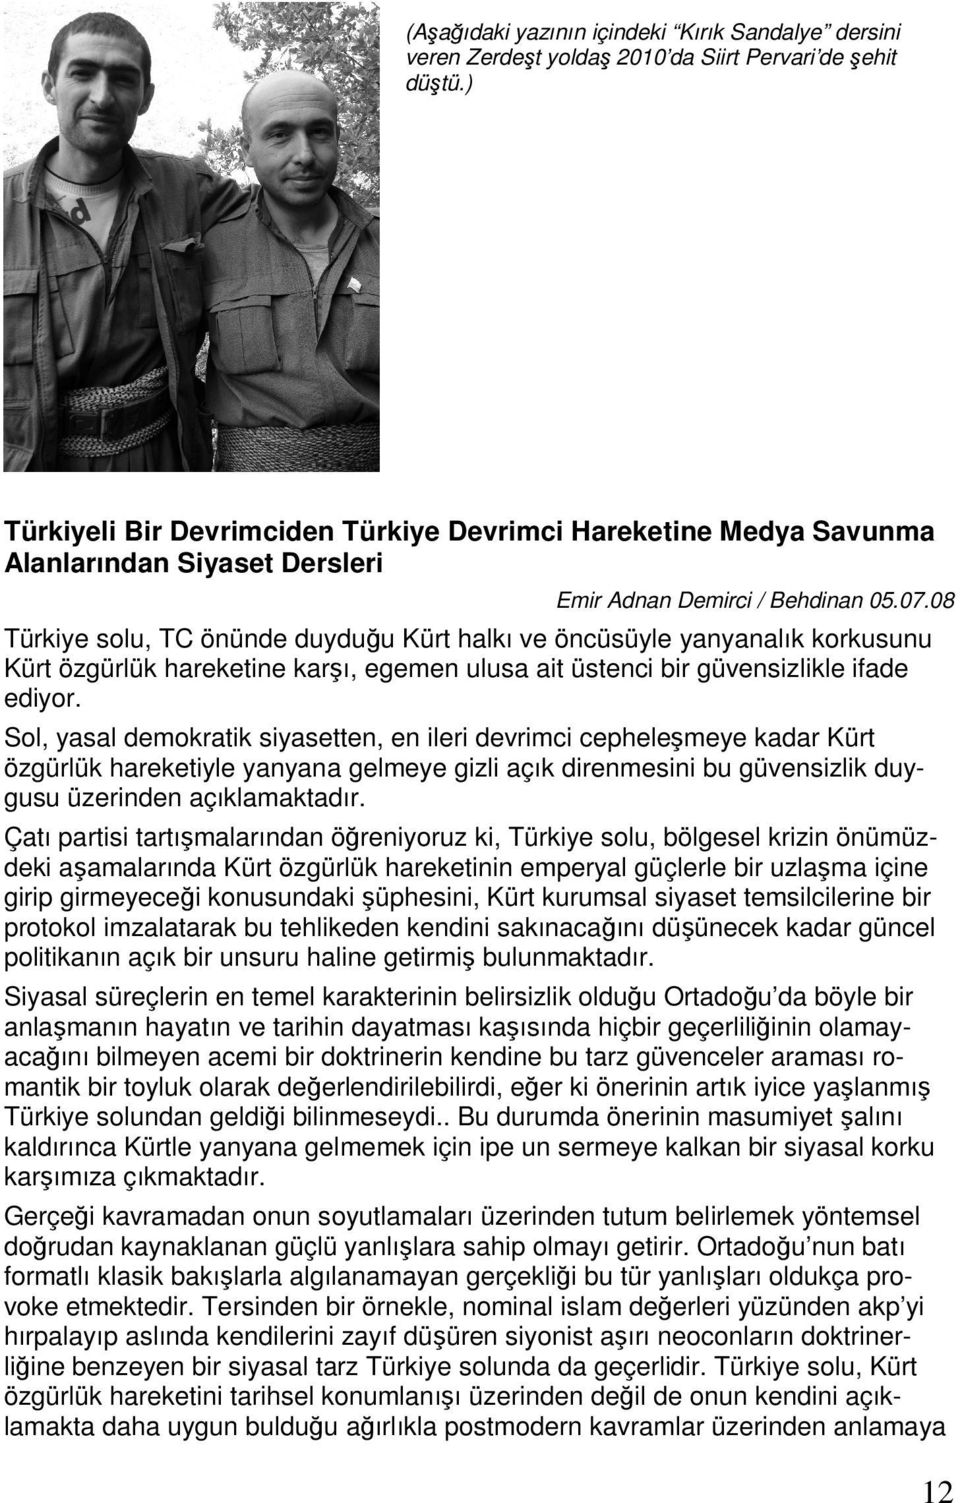 08 Türkiye solu, TC önünde duyduğu Kürt halkı ve öncüsüyle yanyanalık korkusunu Kürt özgürlük hareketine karşı, egemen ulusa ait üstenci bir güvensizlikle ifade ediyor.